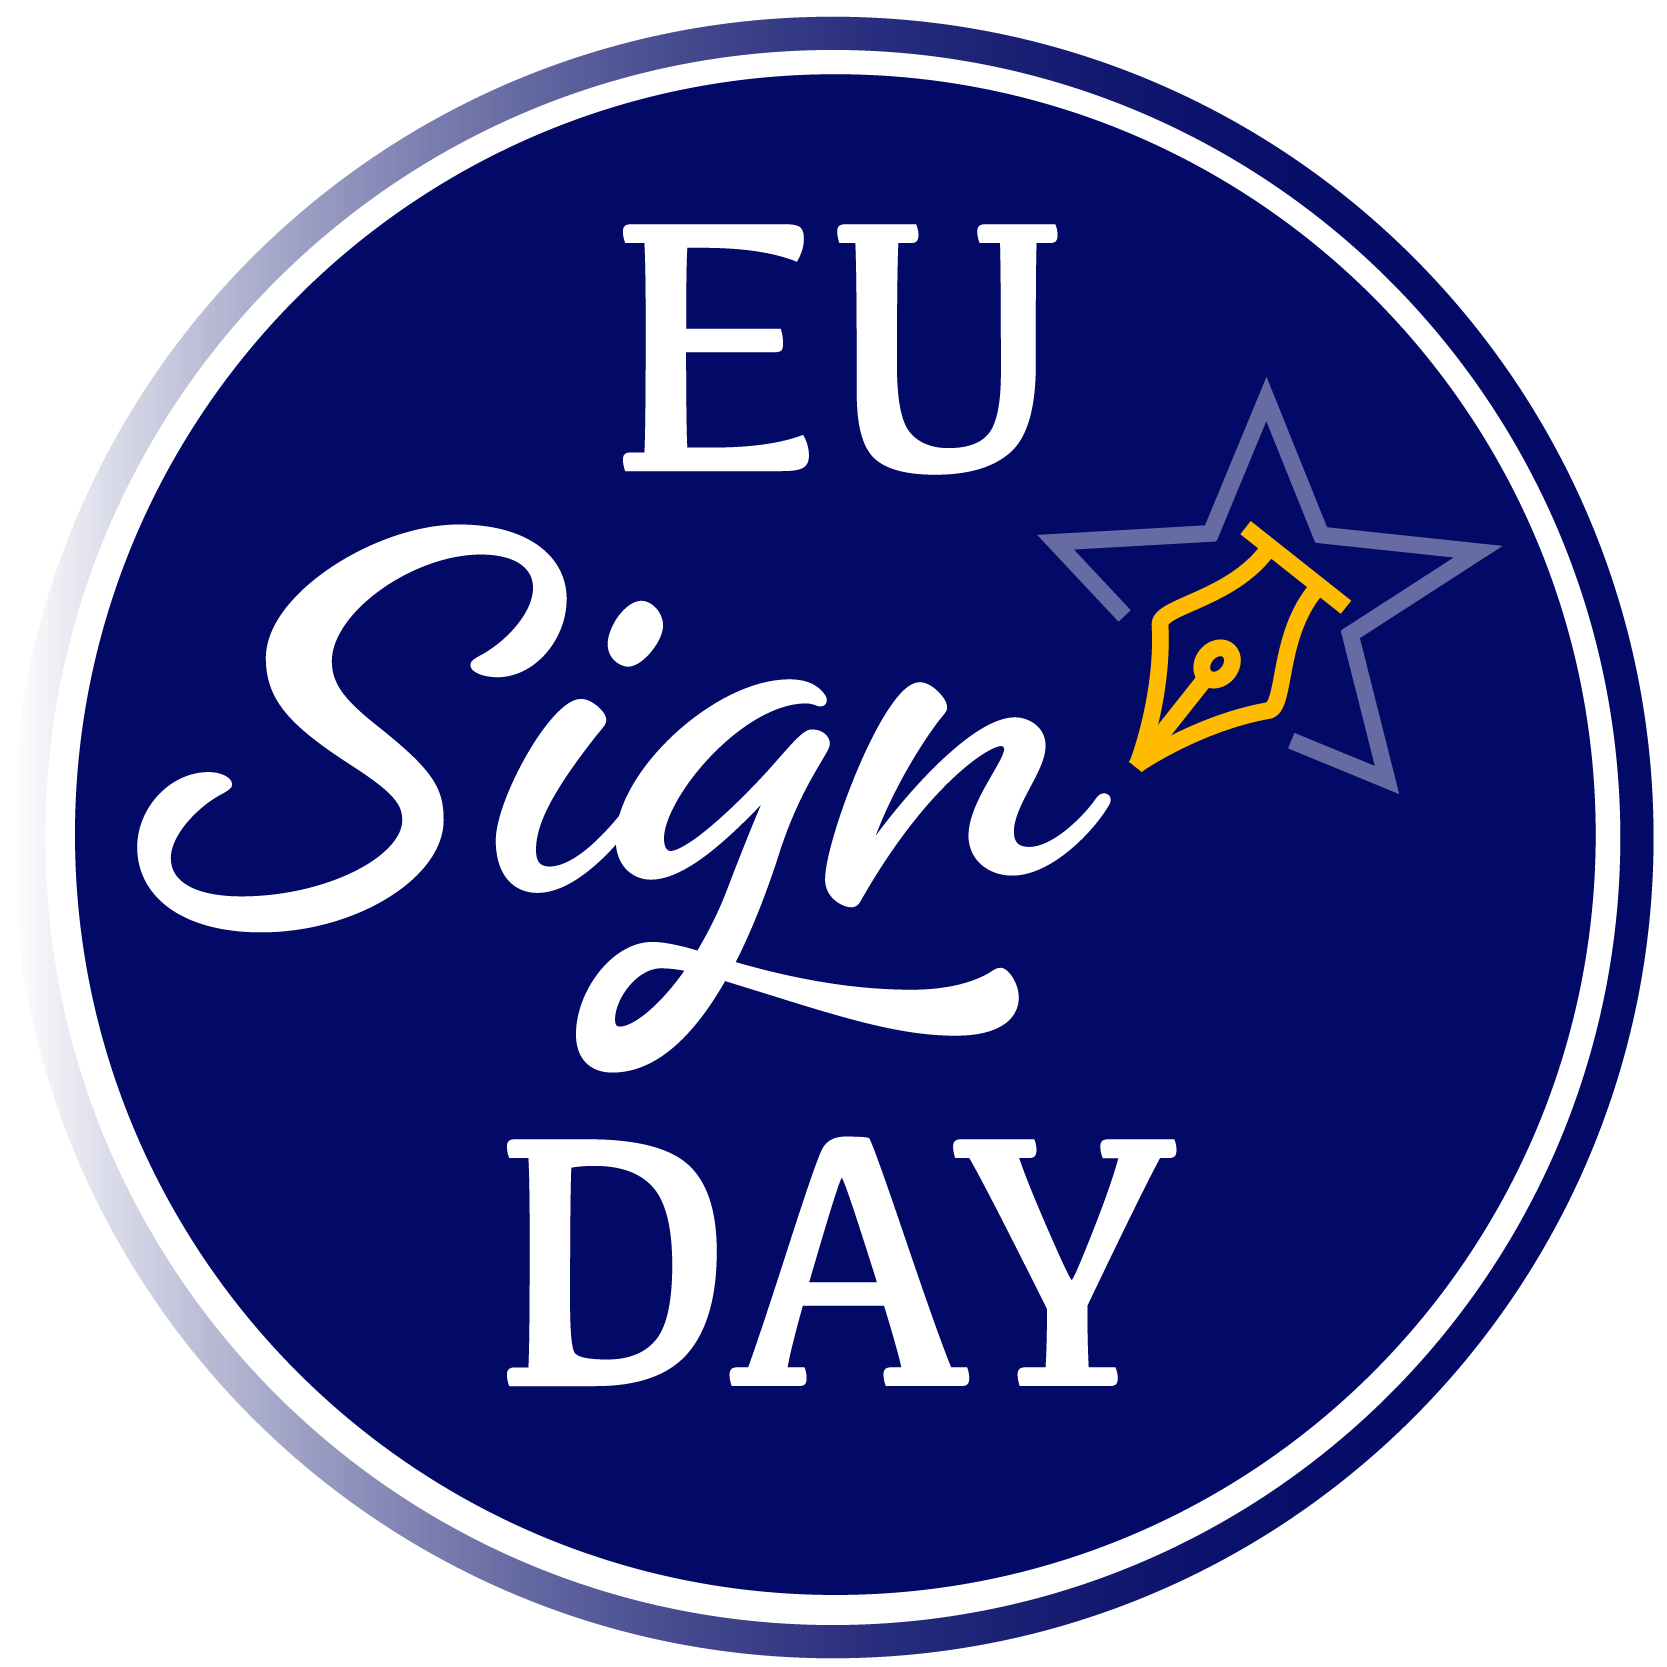 EU SIGN DAY Initiative